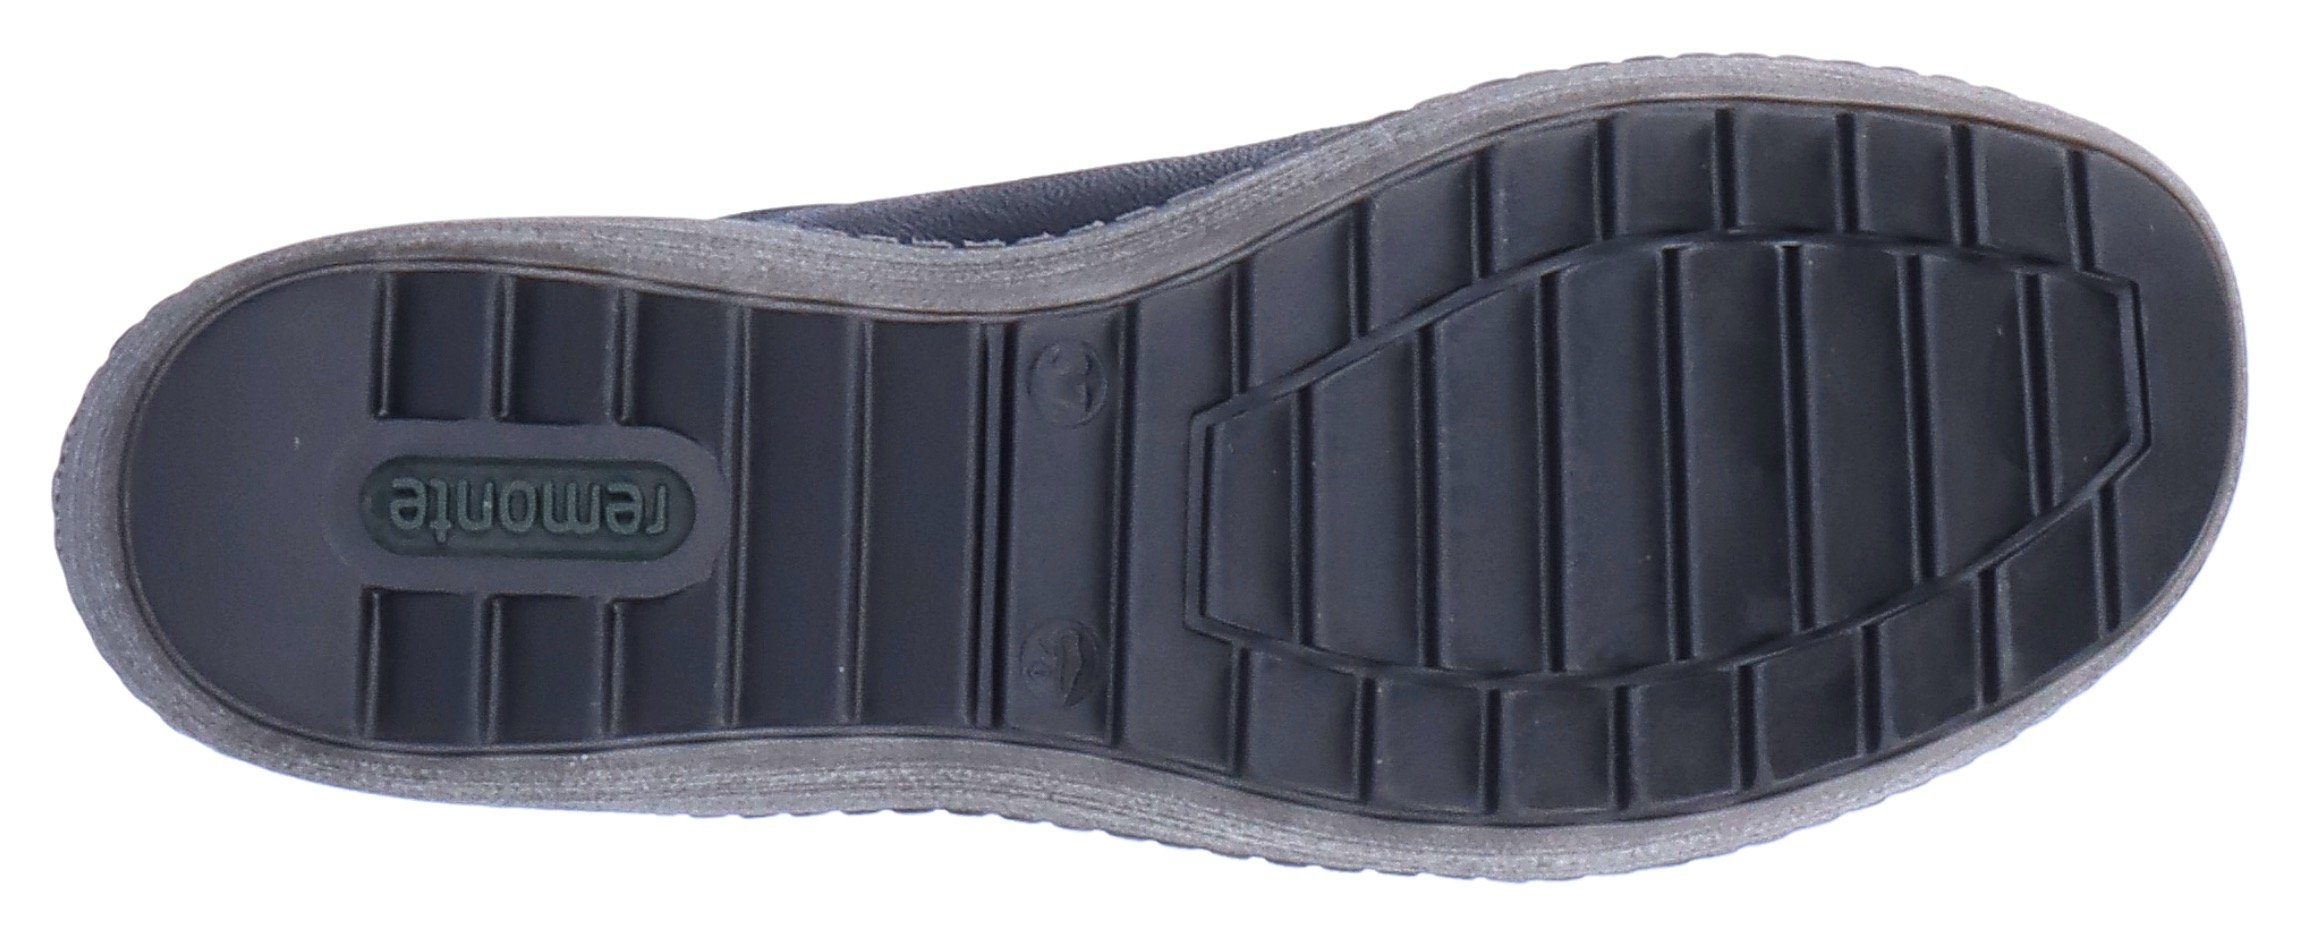 Remonte schwarz-silberfarben mit Tex-Ausstattung Schnürschuh